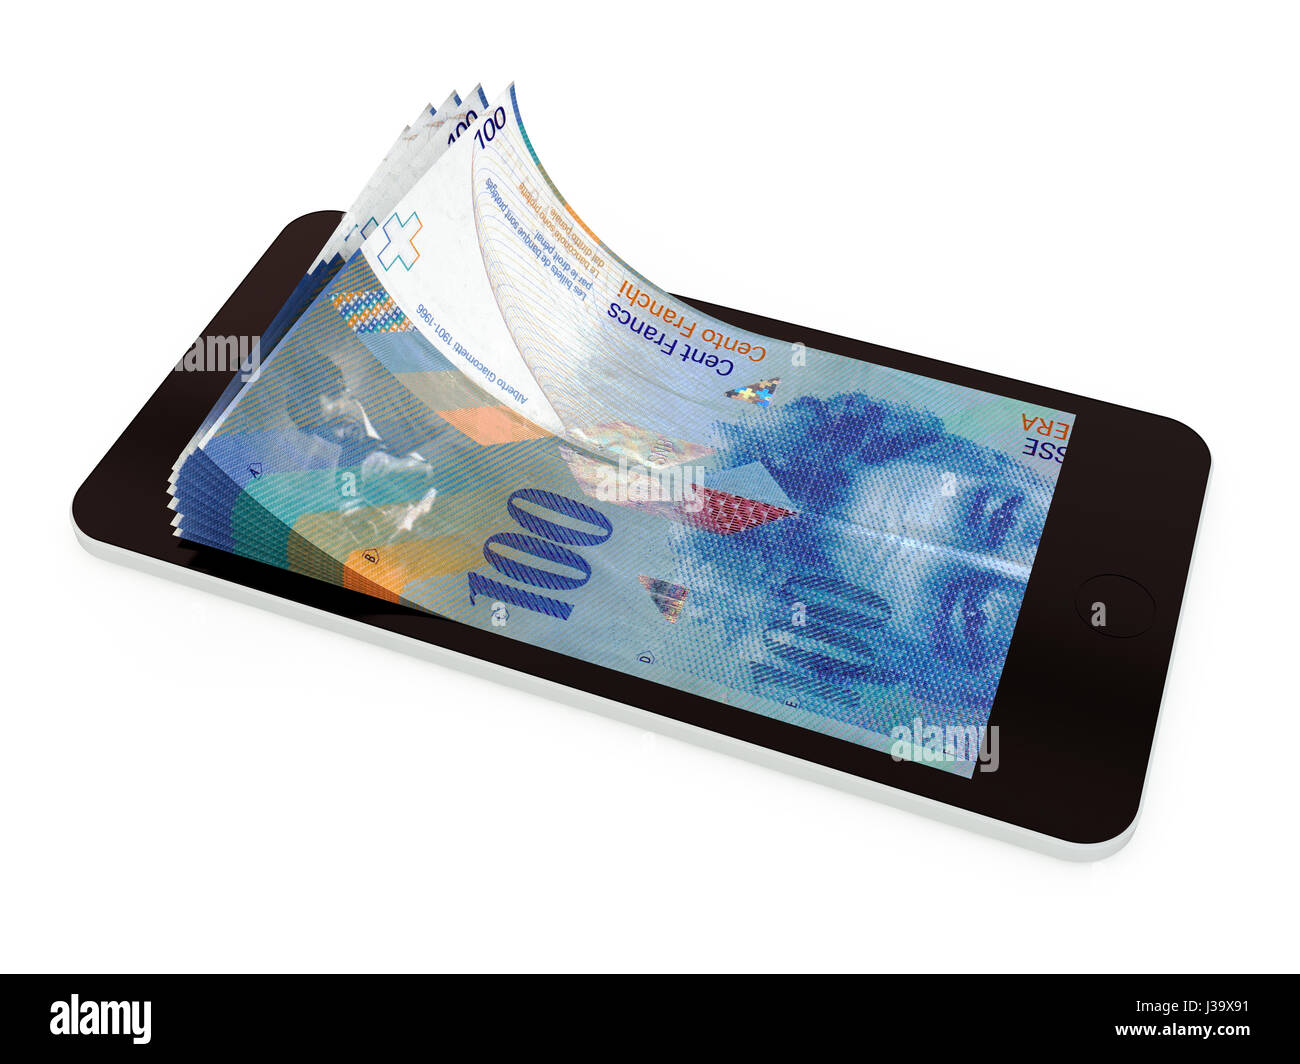 Paiement Mobile, transfert d'argent avec smart phone. Rendu 3d illustration. Banque D'Images